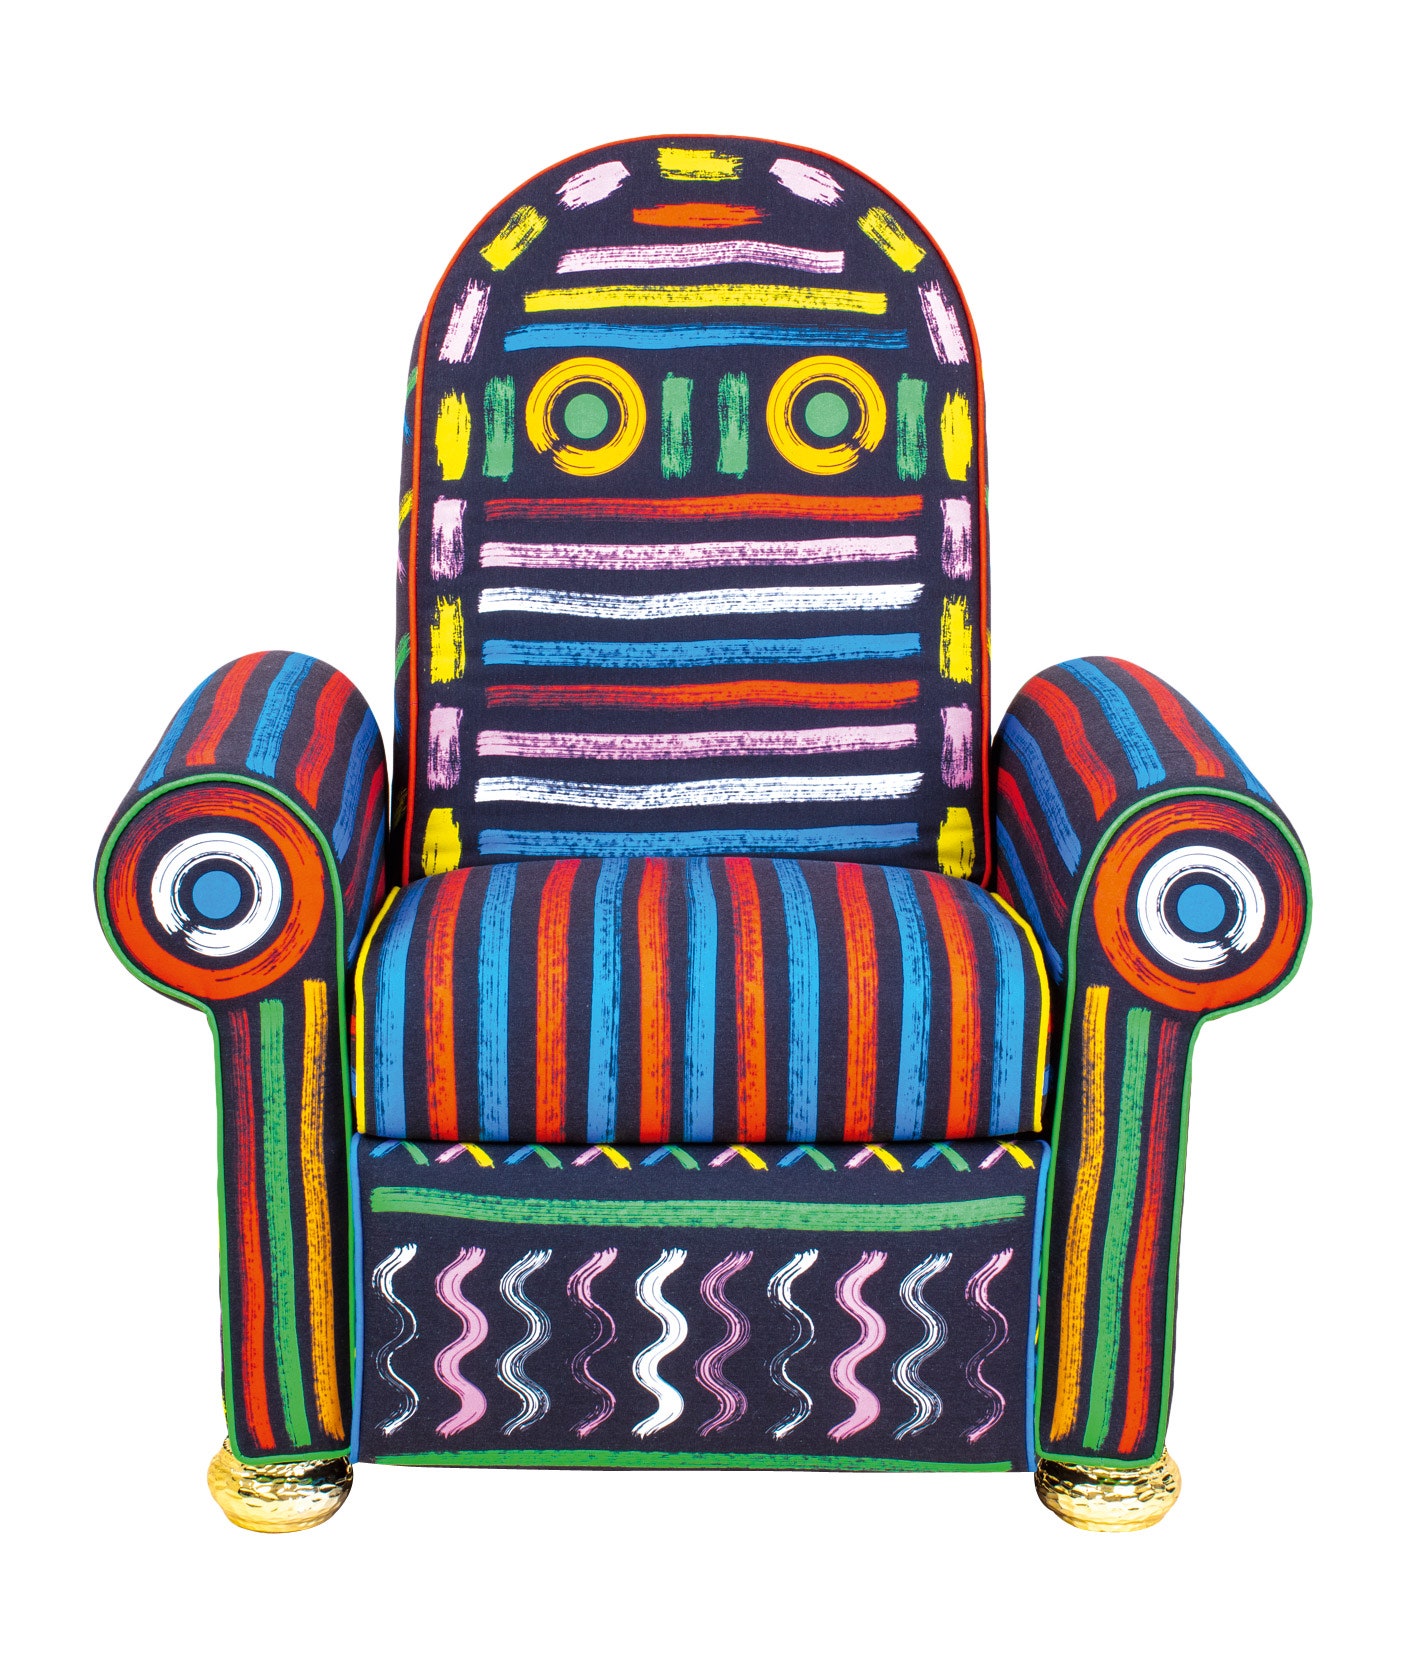 Кресло “Ленивый художник” для Blow совместного бренда Studio Job и Seletti.